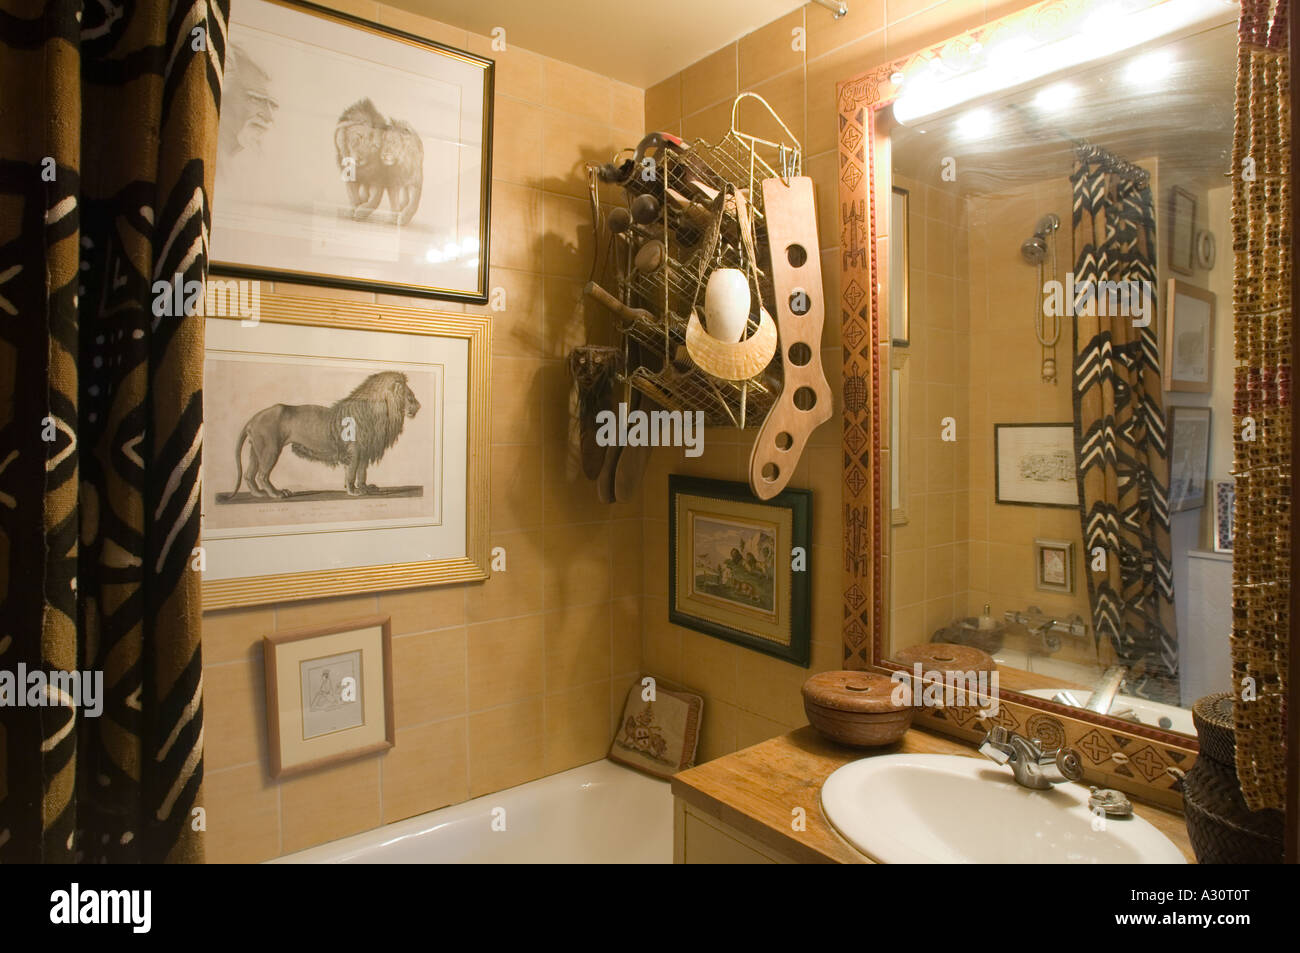 Salle de bains confortable avec des objets décoratifs Banque D'Images